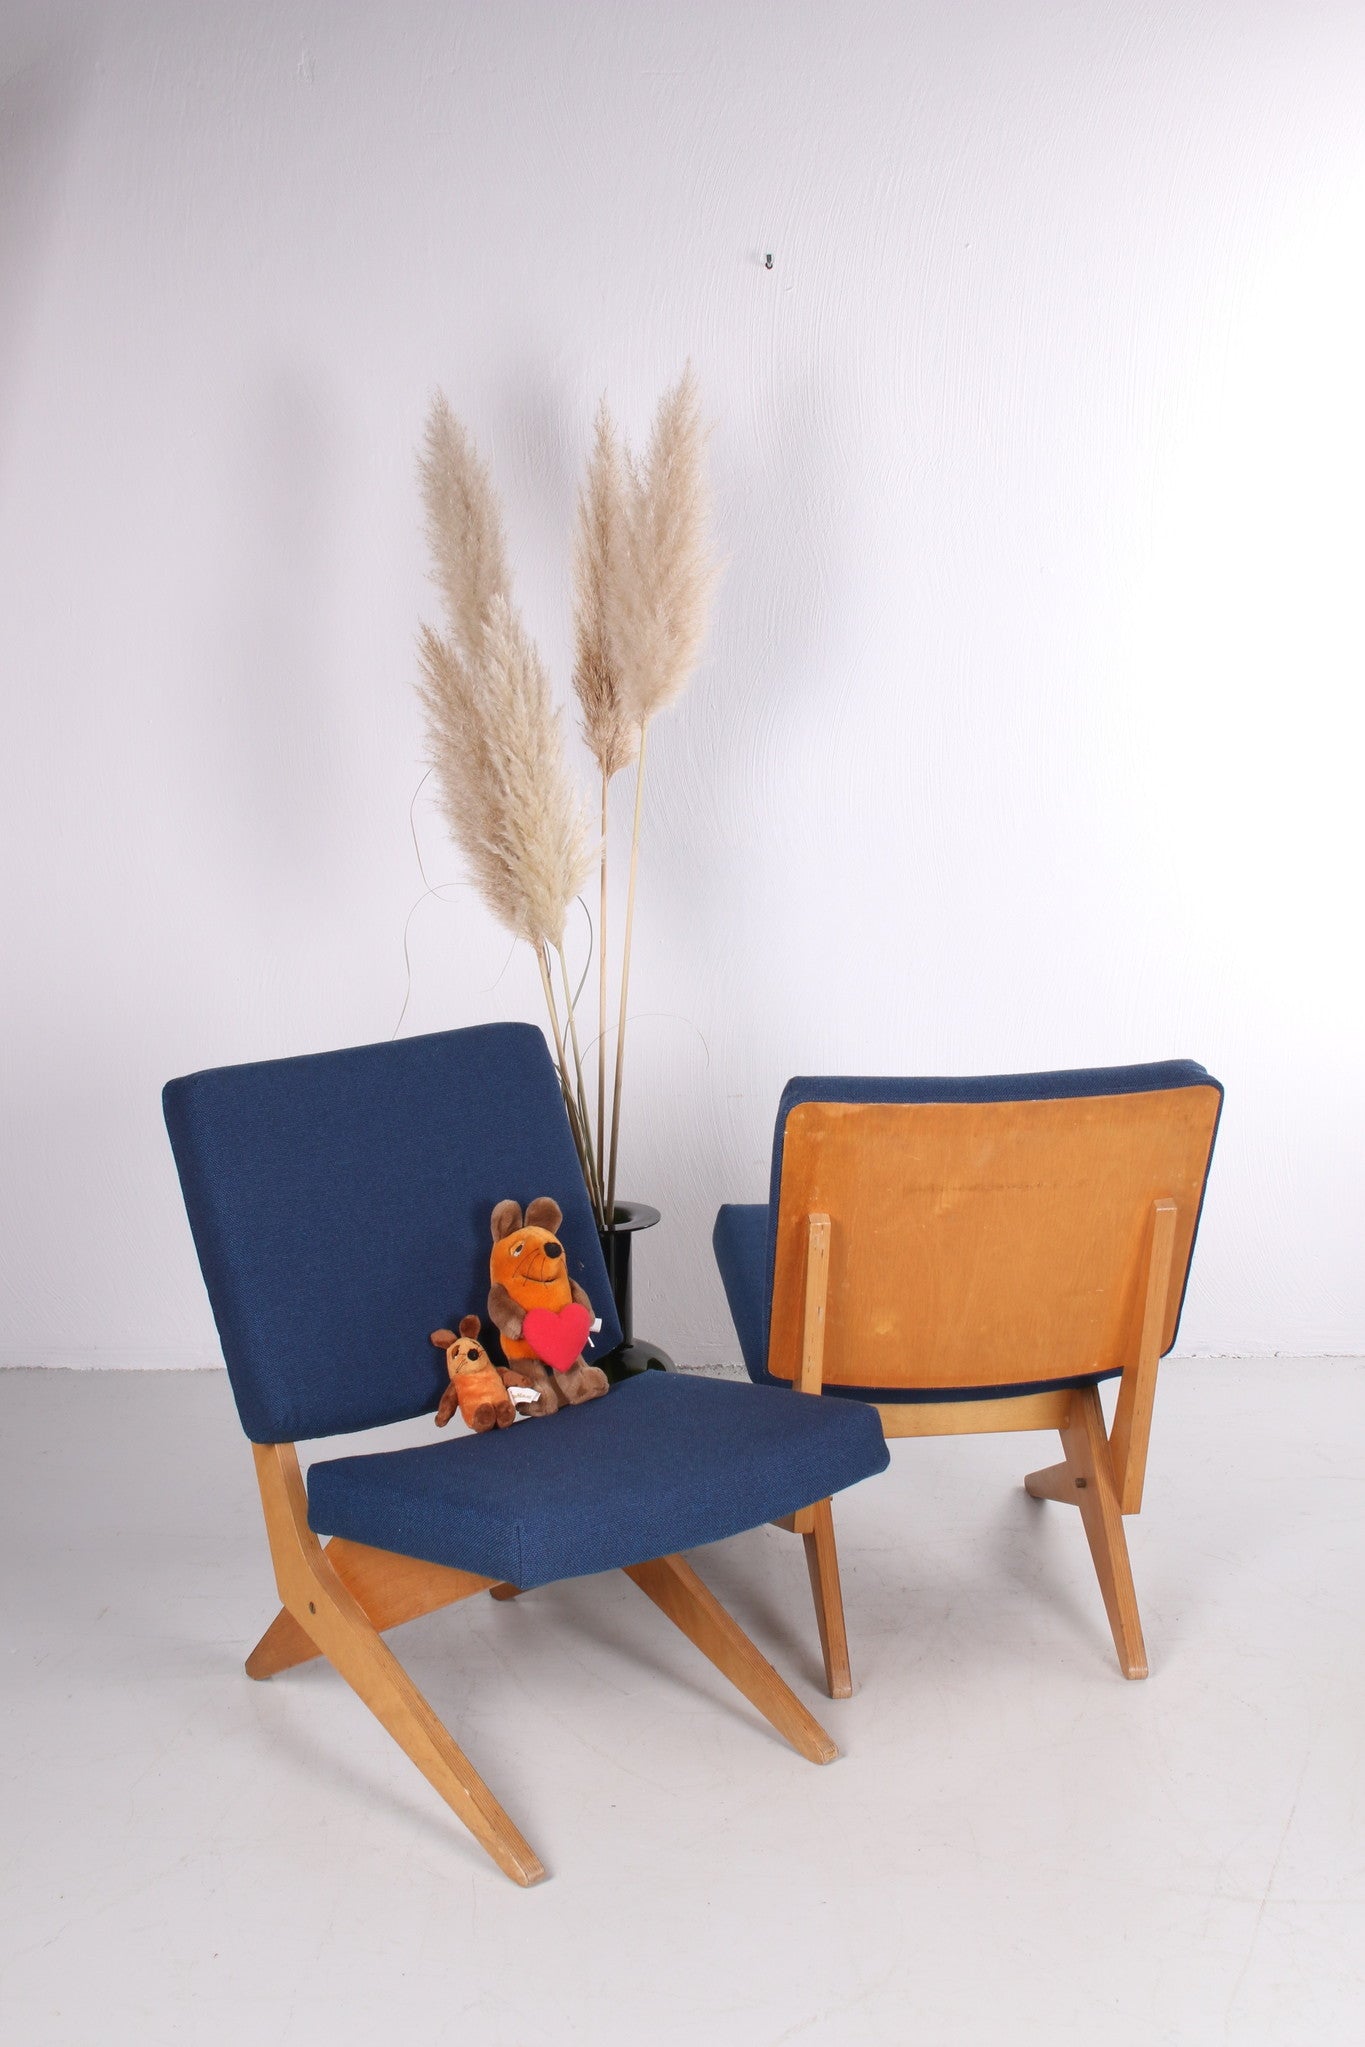 Set FB18 Scissor fauteuil ontworpen door Jan van Grunsven voor Pastoe, jaren 50 sfeerfoto